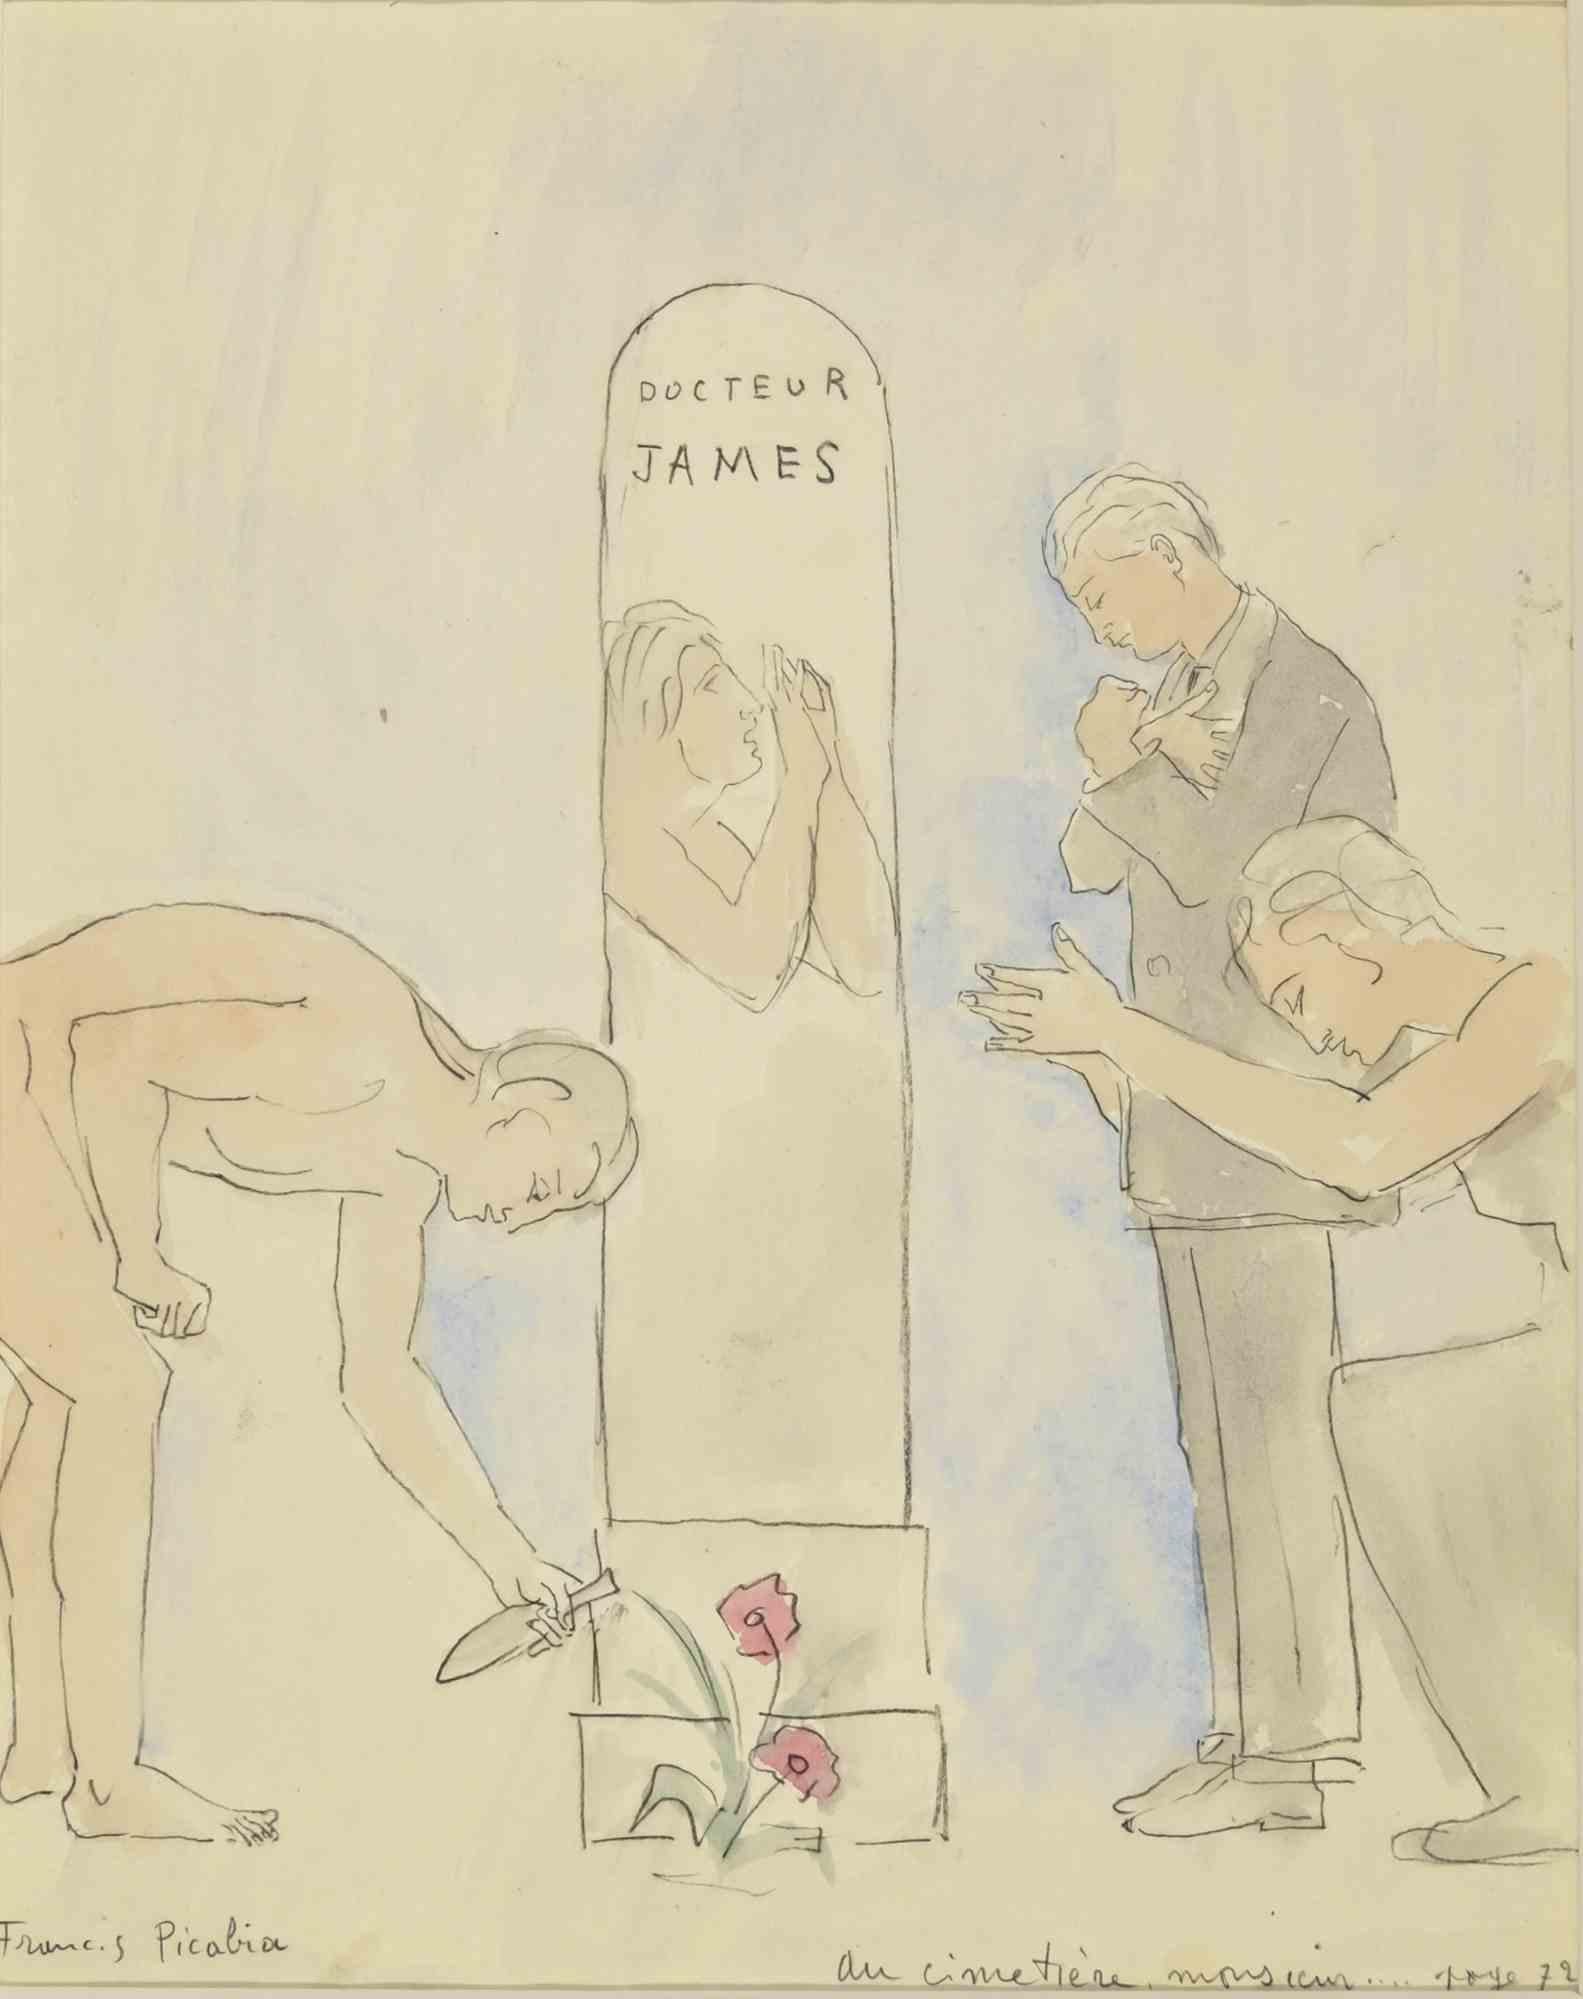 Au Cimetière Monsieur- Crayon et aquarelle sur papier par F. Picabia - 1931